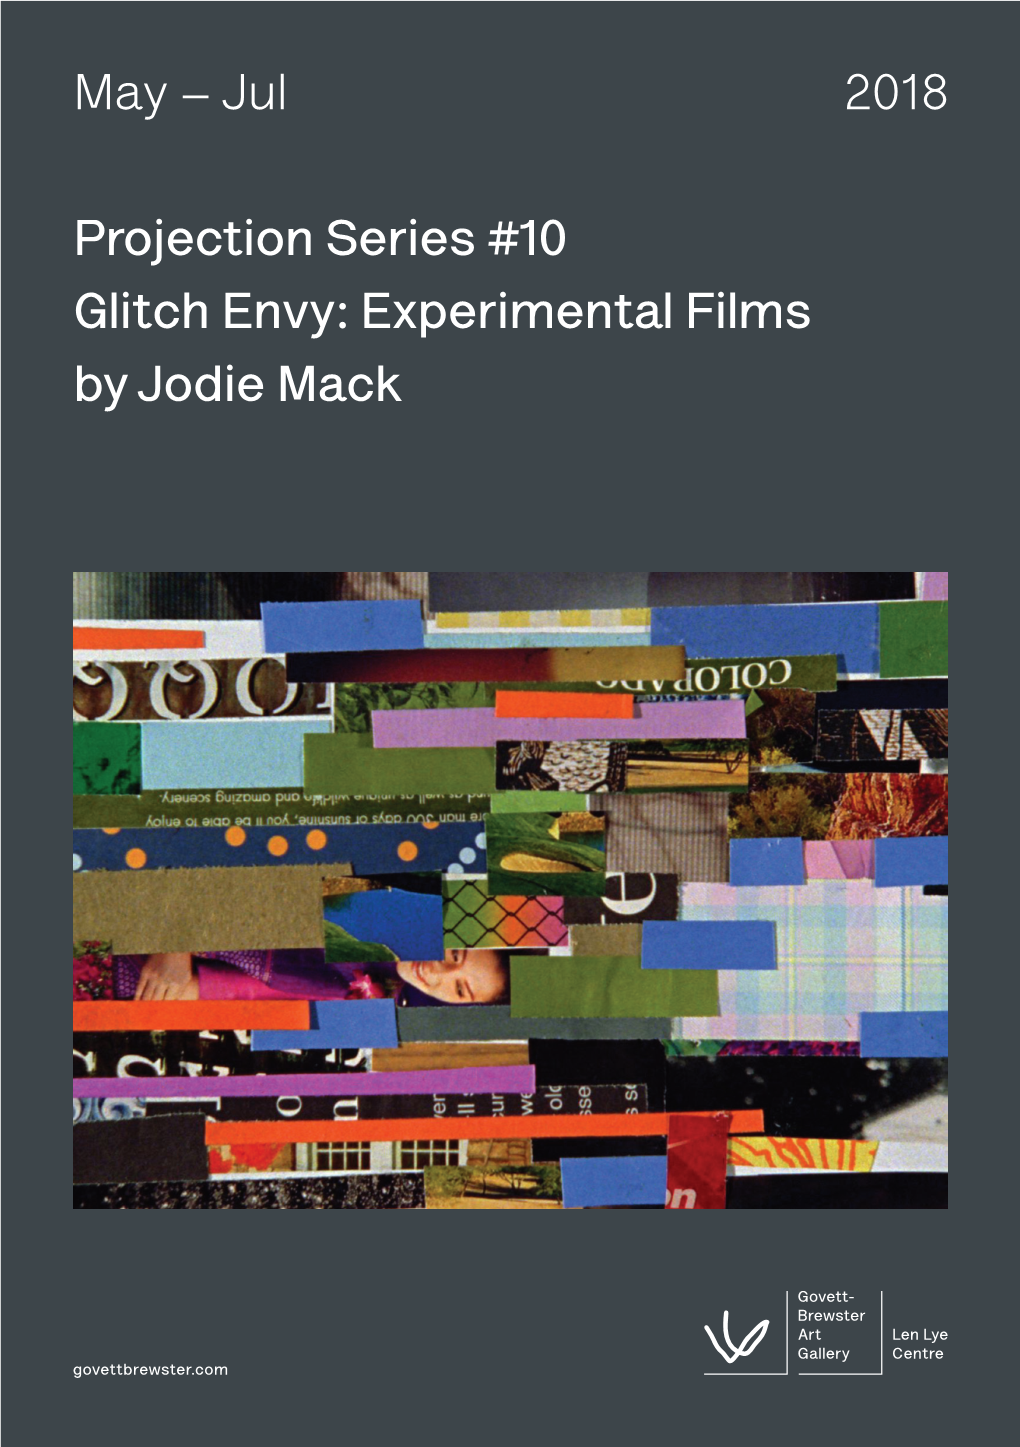 Experimental Films by Jodie Mack